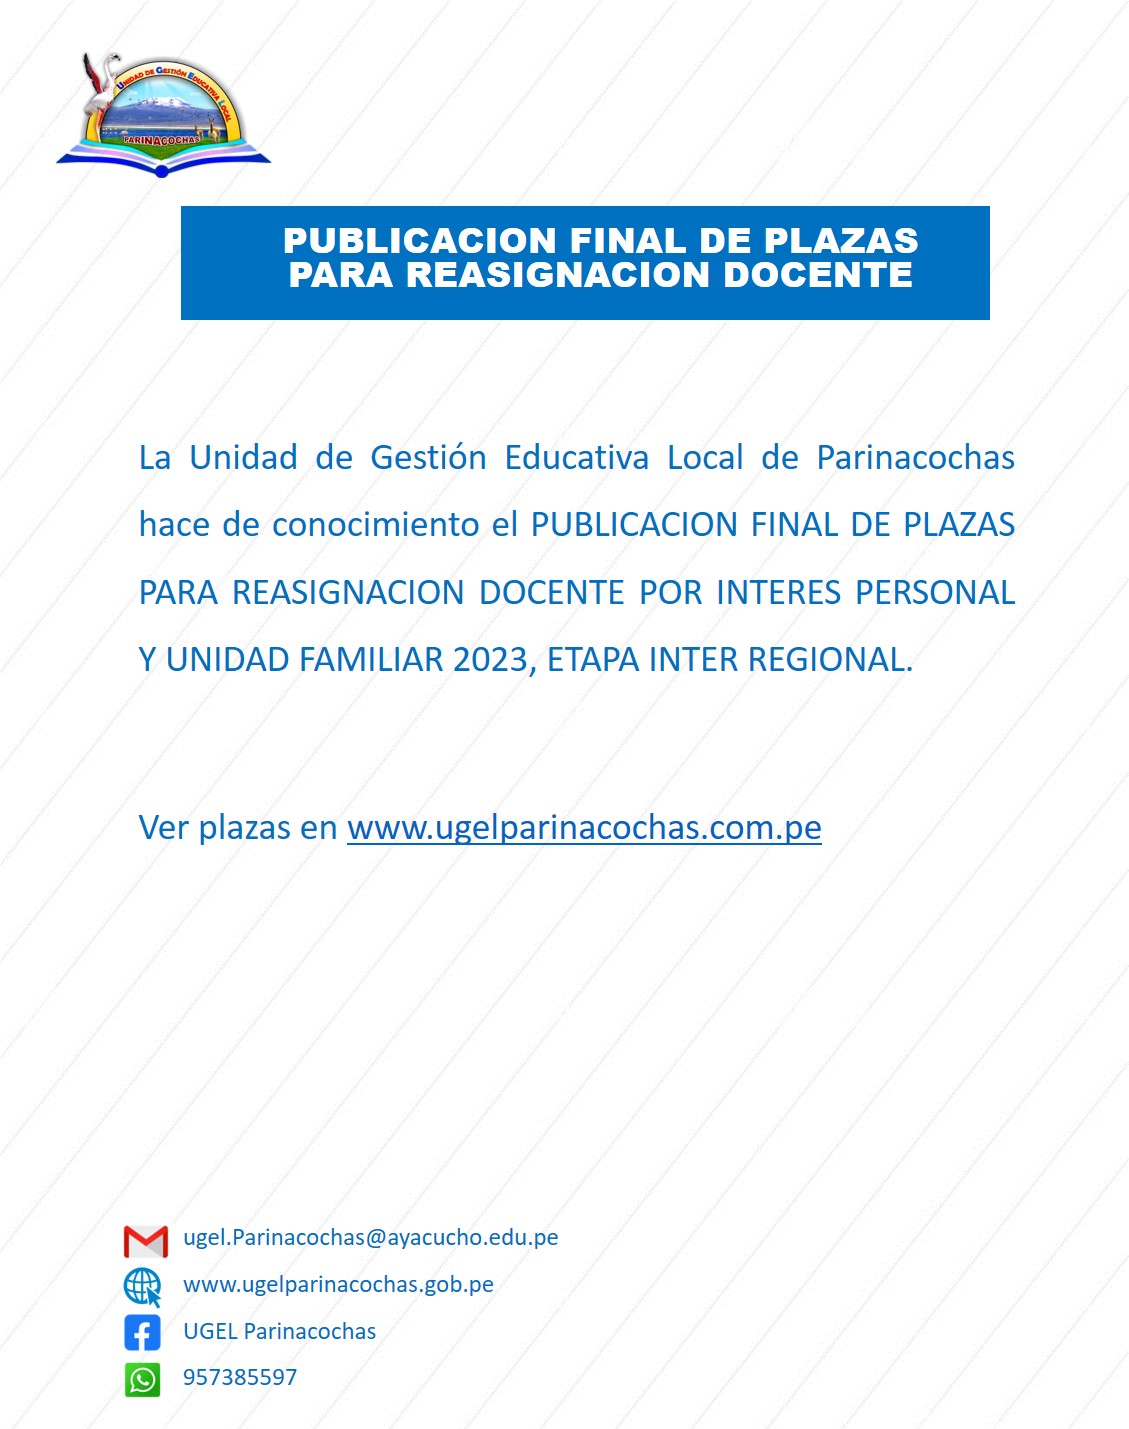 PUBLICACION FINAL DE PLAZAS PARA REASIGNACION DOCENTE POR INTERES PERSONAL Y UNIDAD FAMILIAR 2023, ETAPA INTER REGION